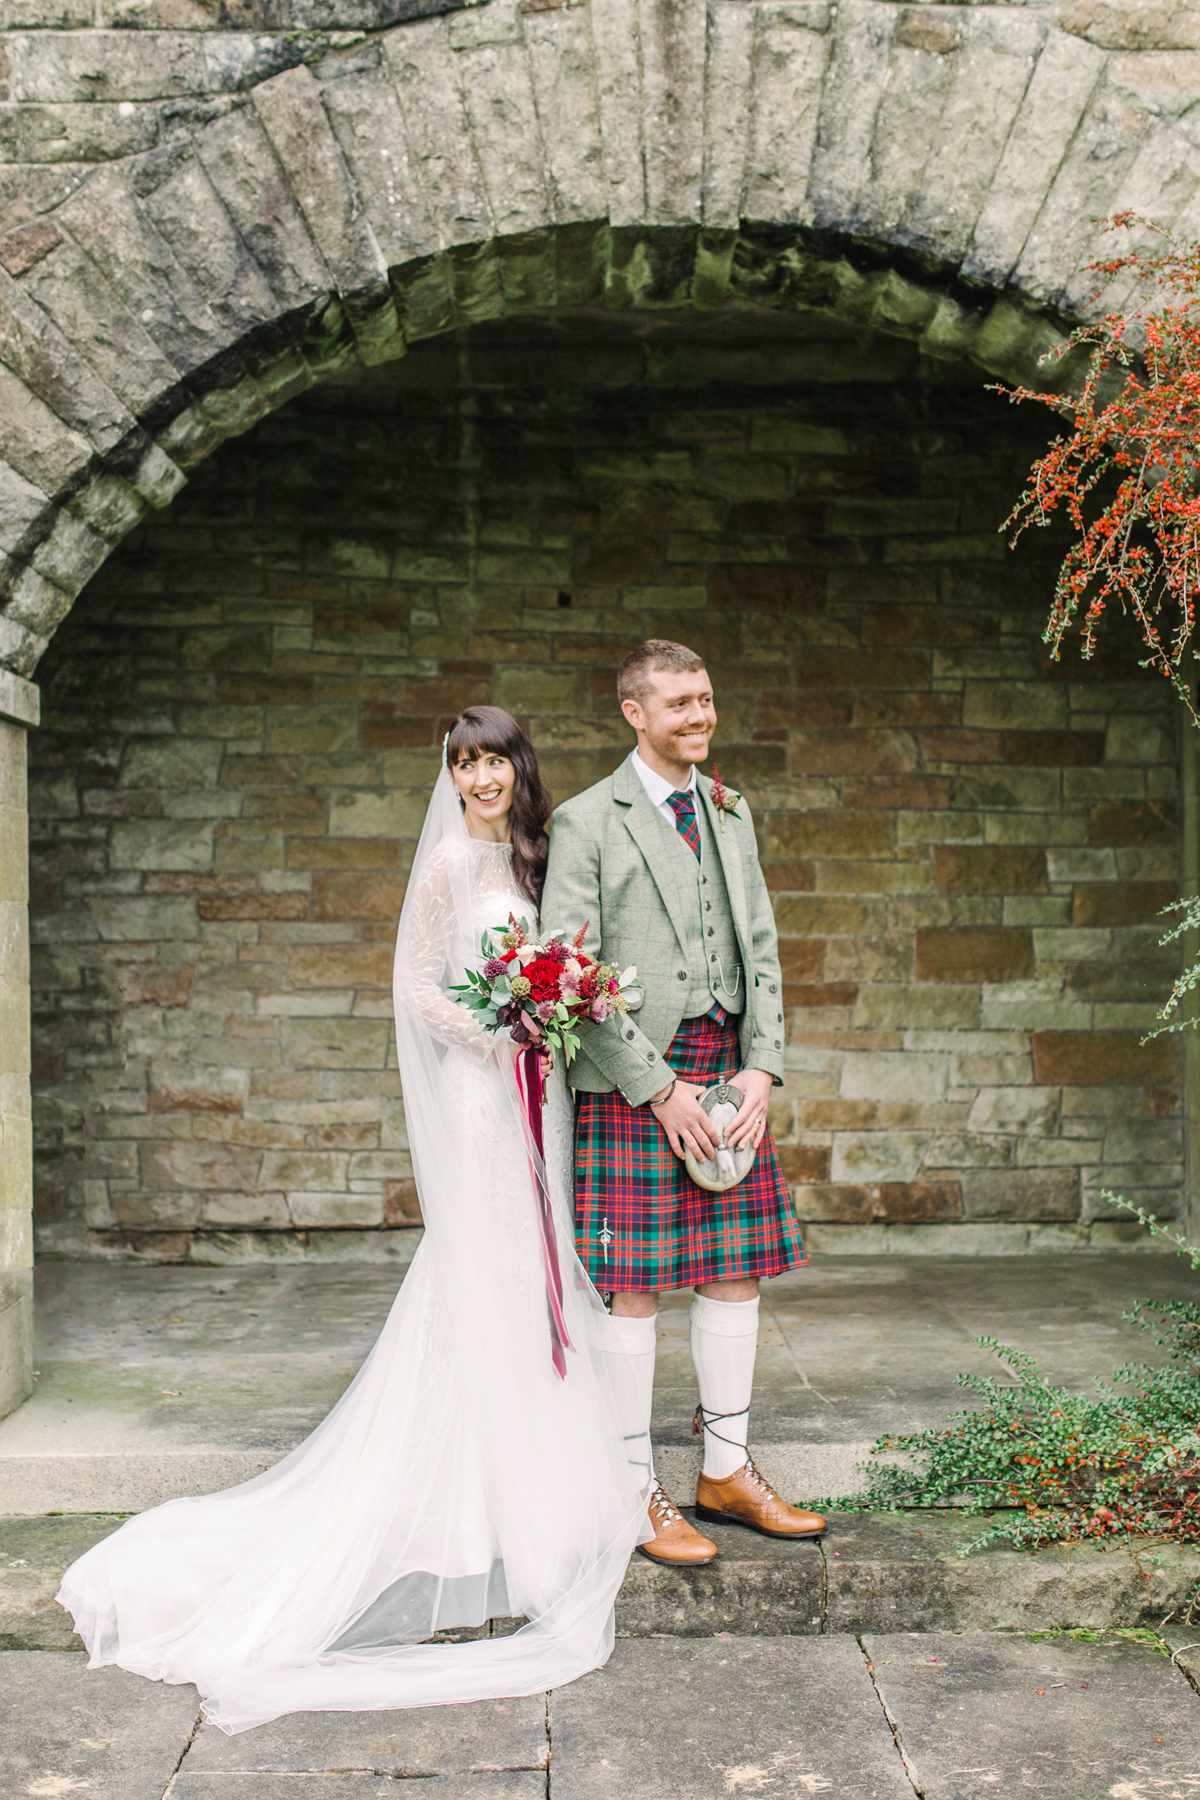 31 Happy bride and groom at Rowallan Castle in Scotland